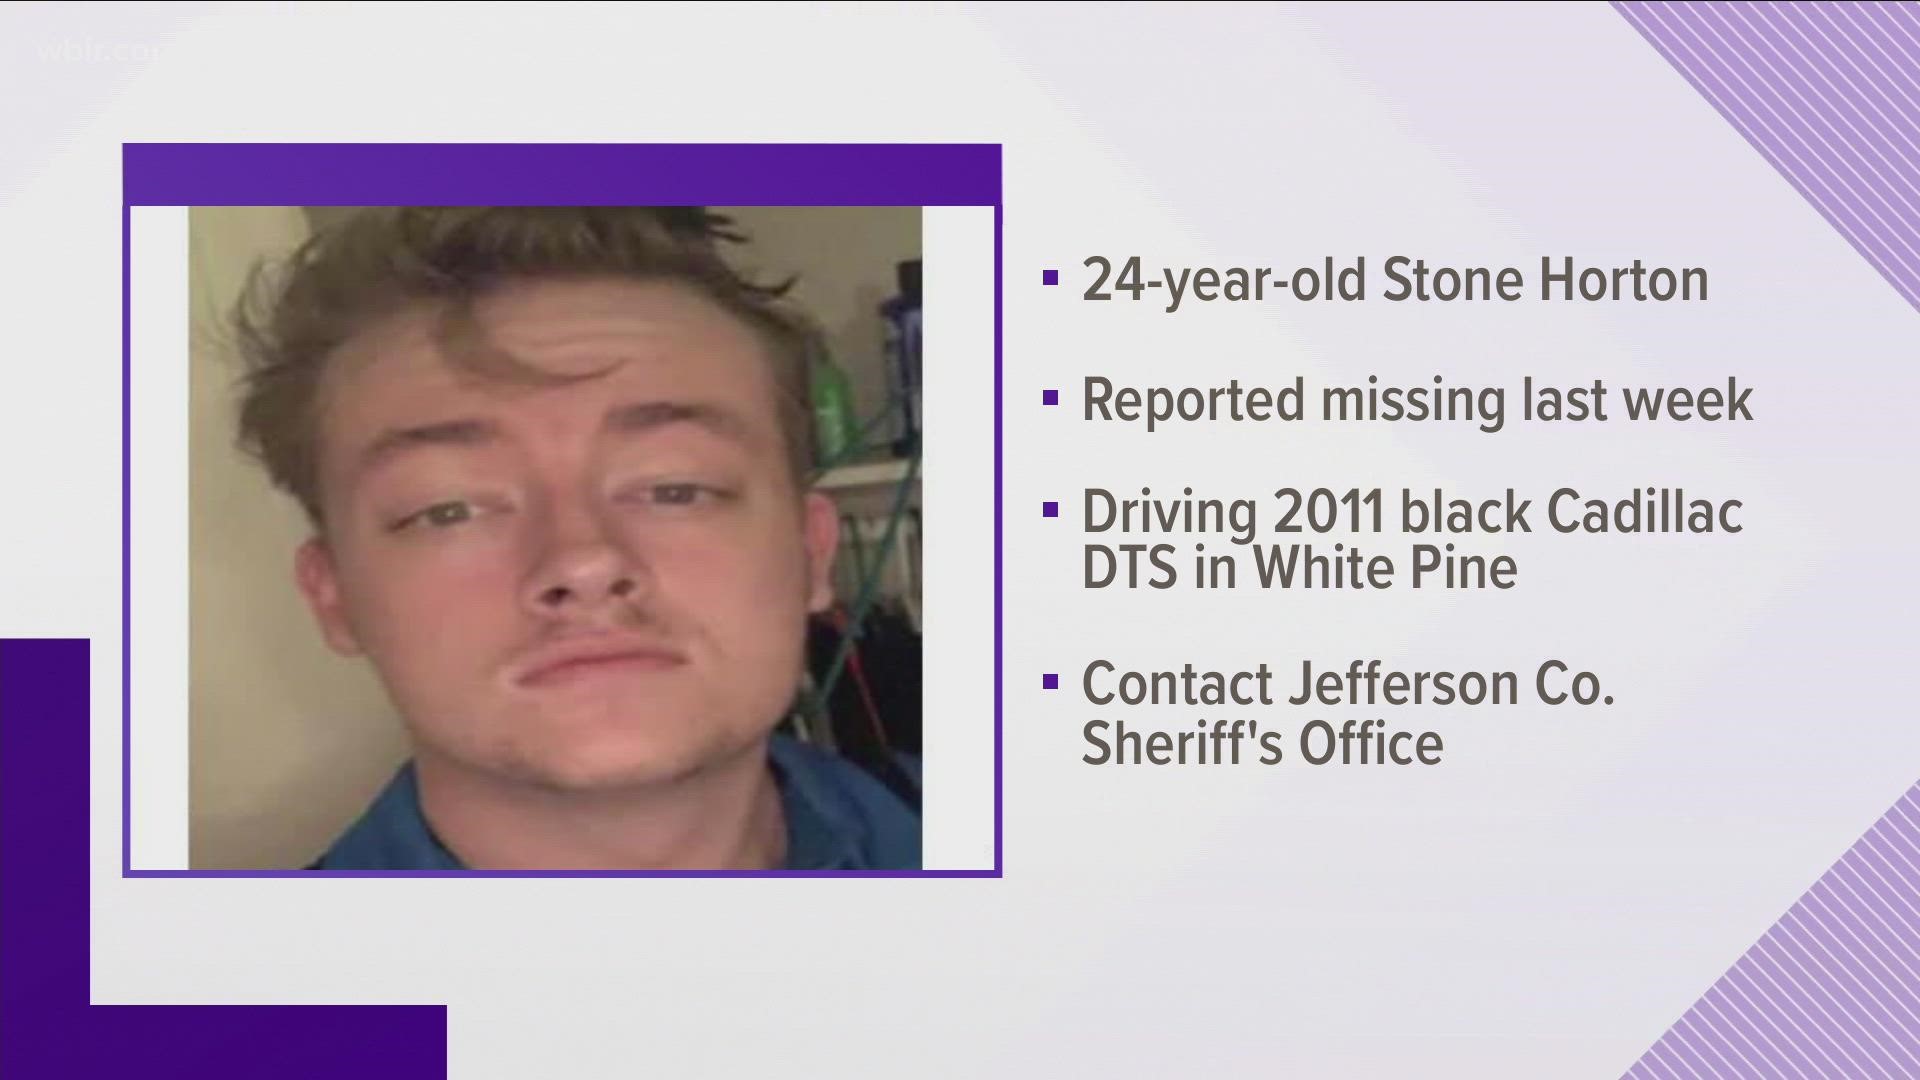 Deputies said the man was reported missing last week.